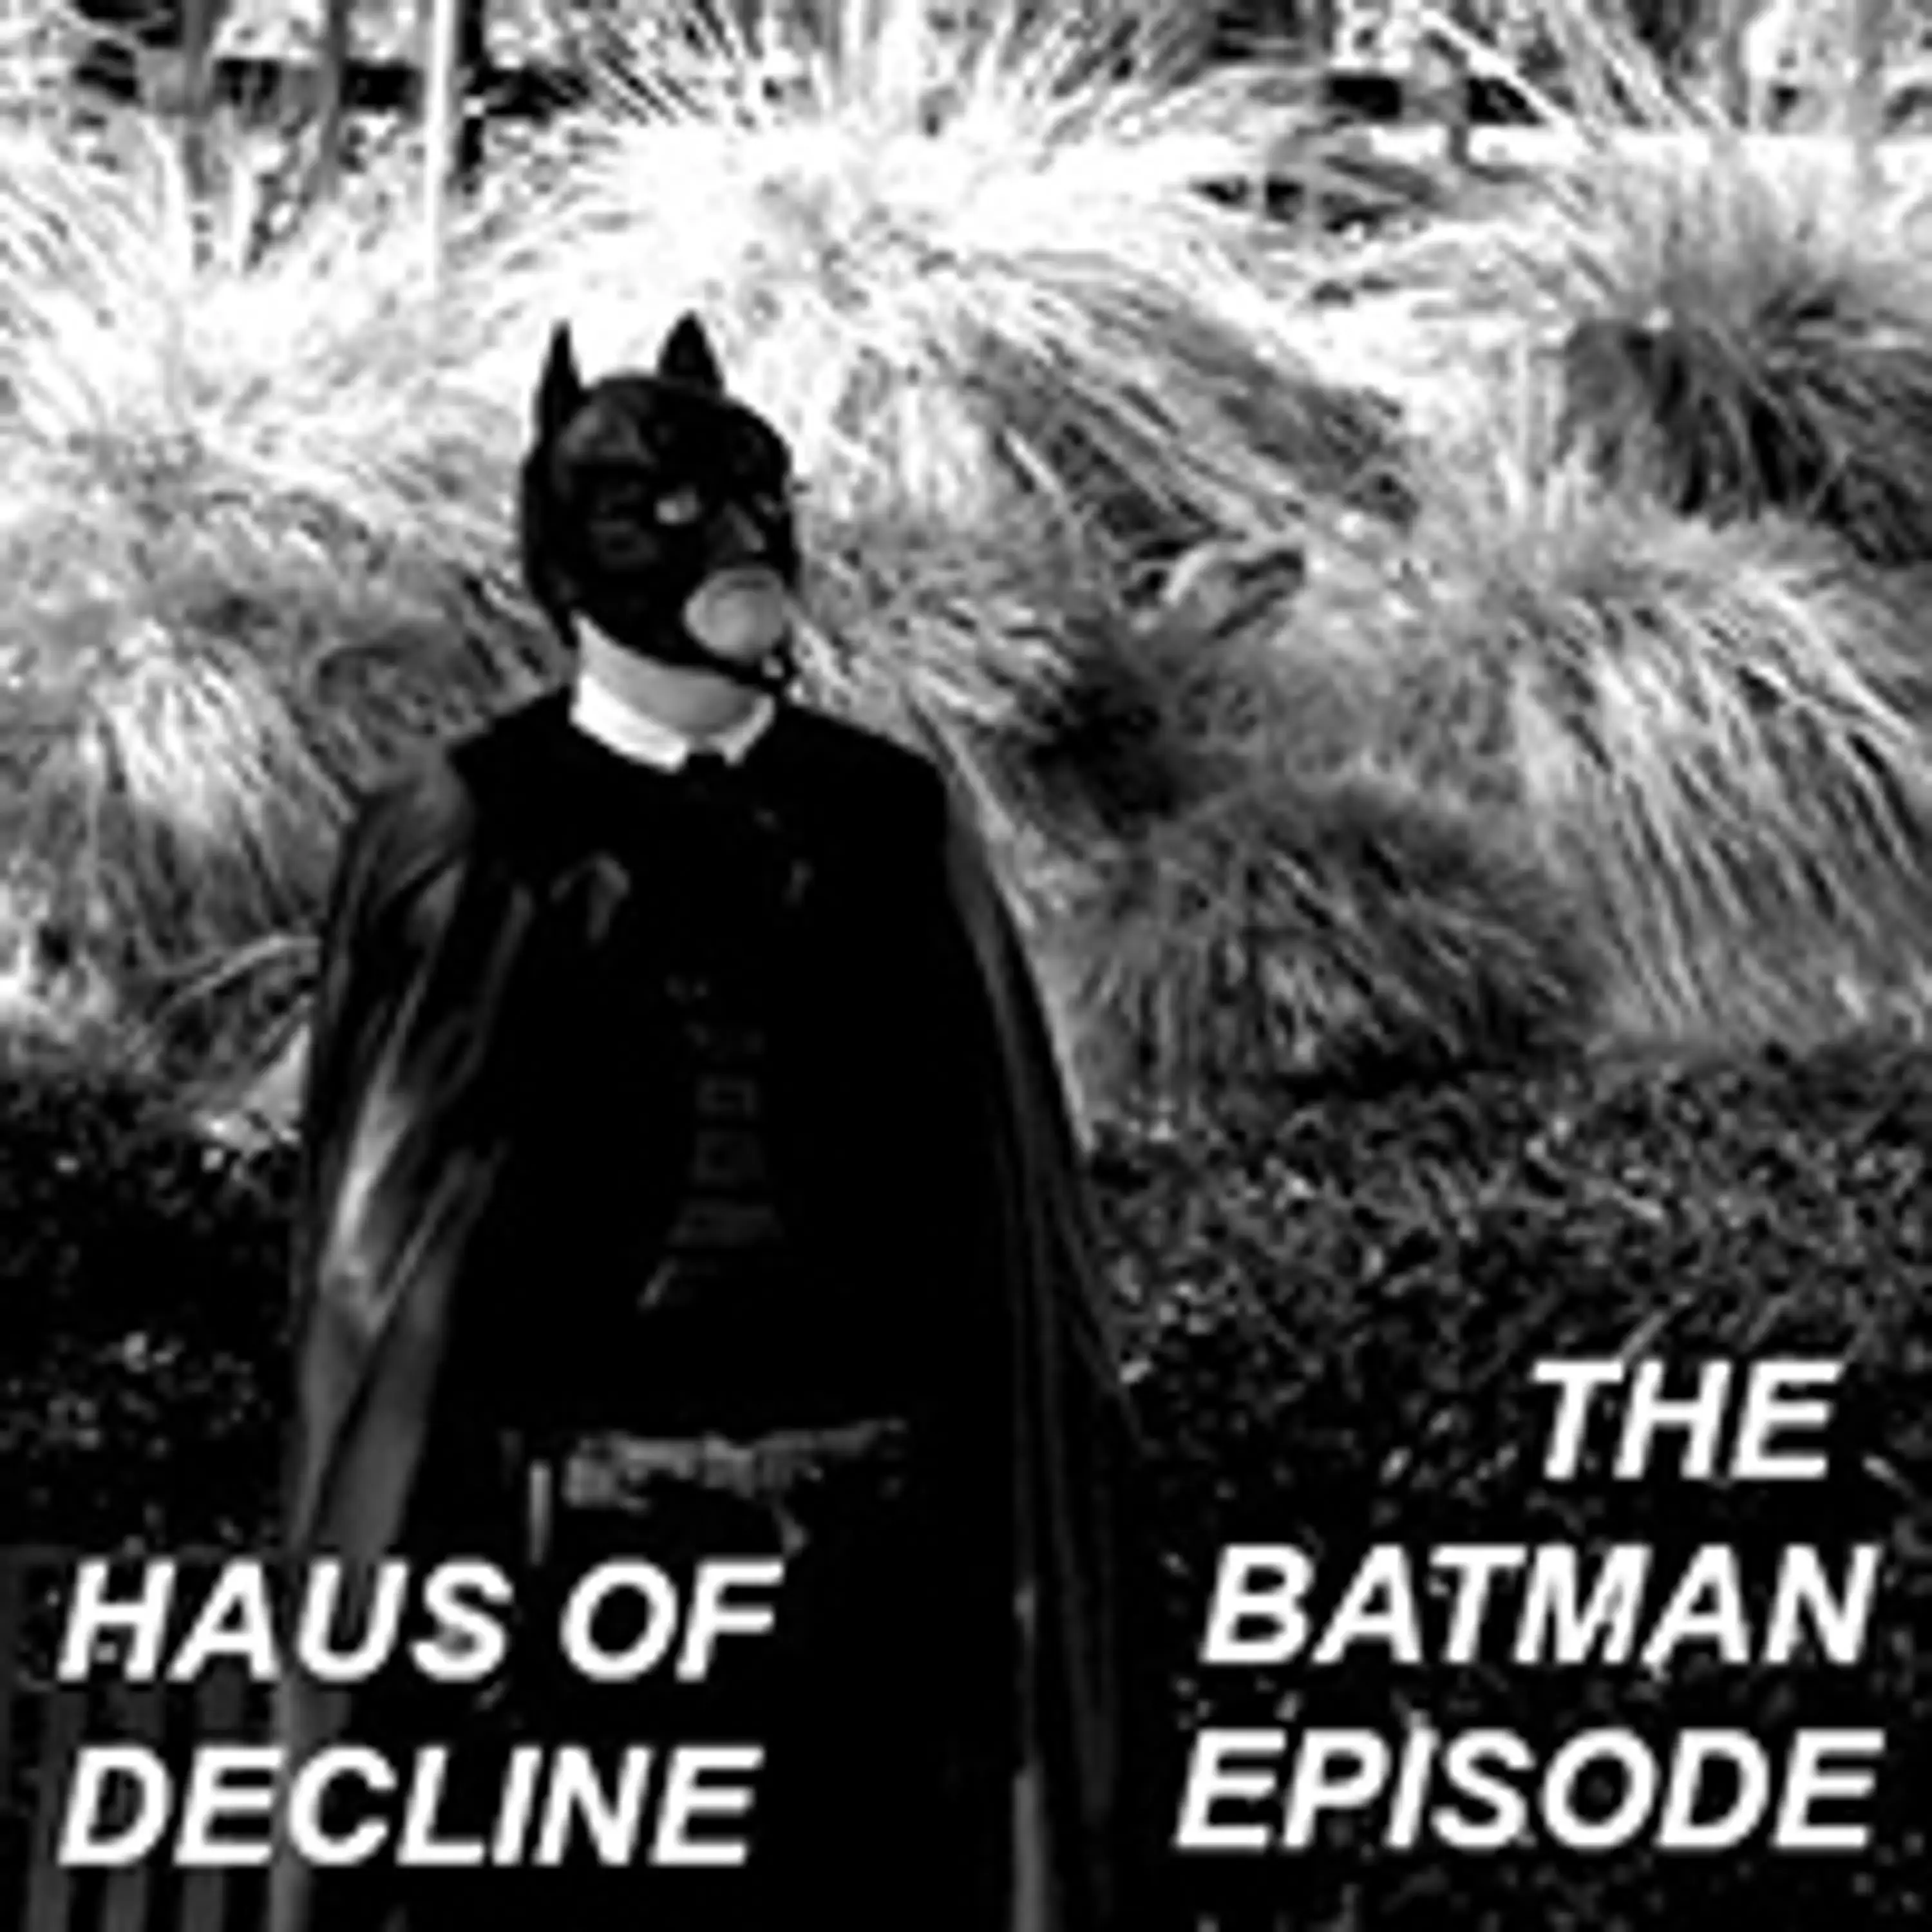 The Batman Episode feat @java_jigga